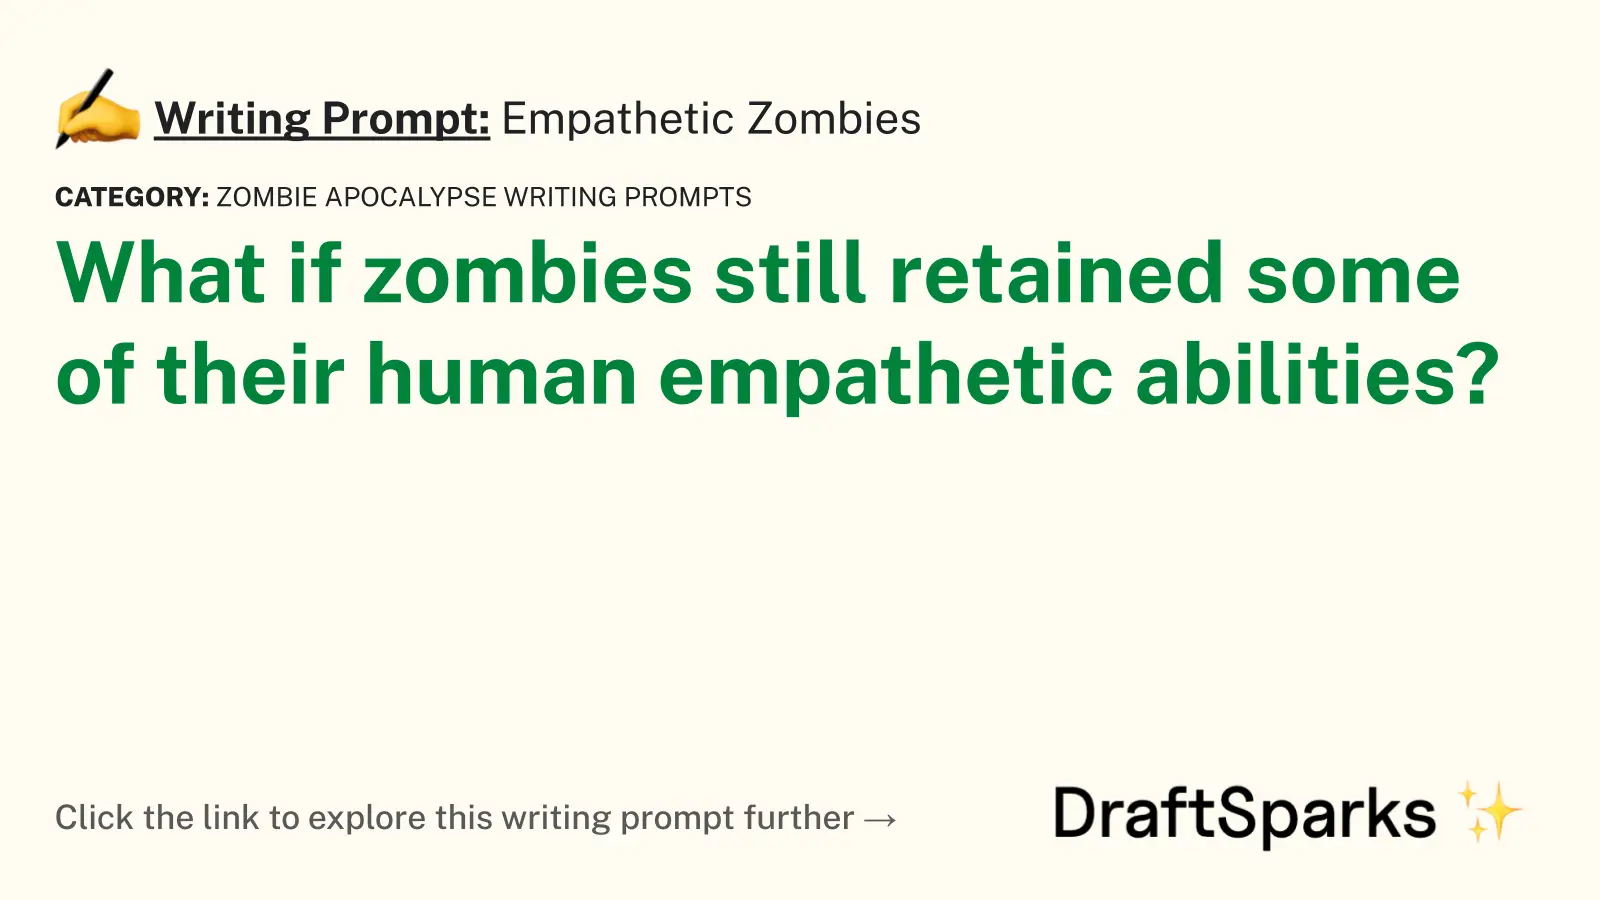 Empathetic Zombies